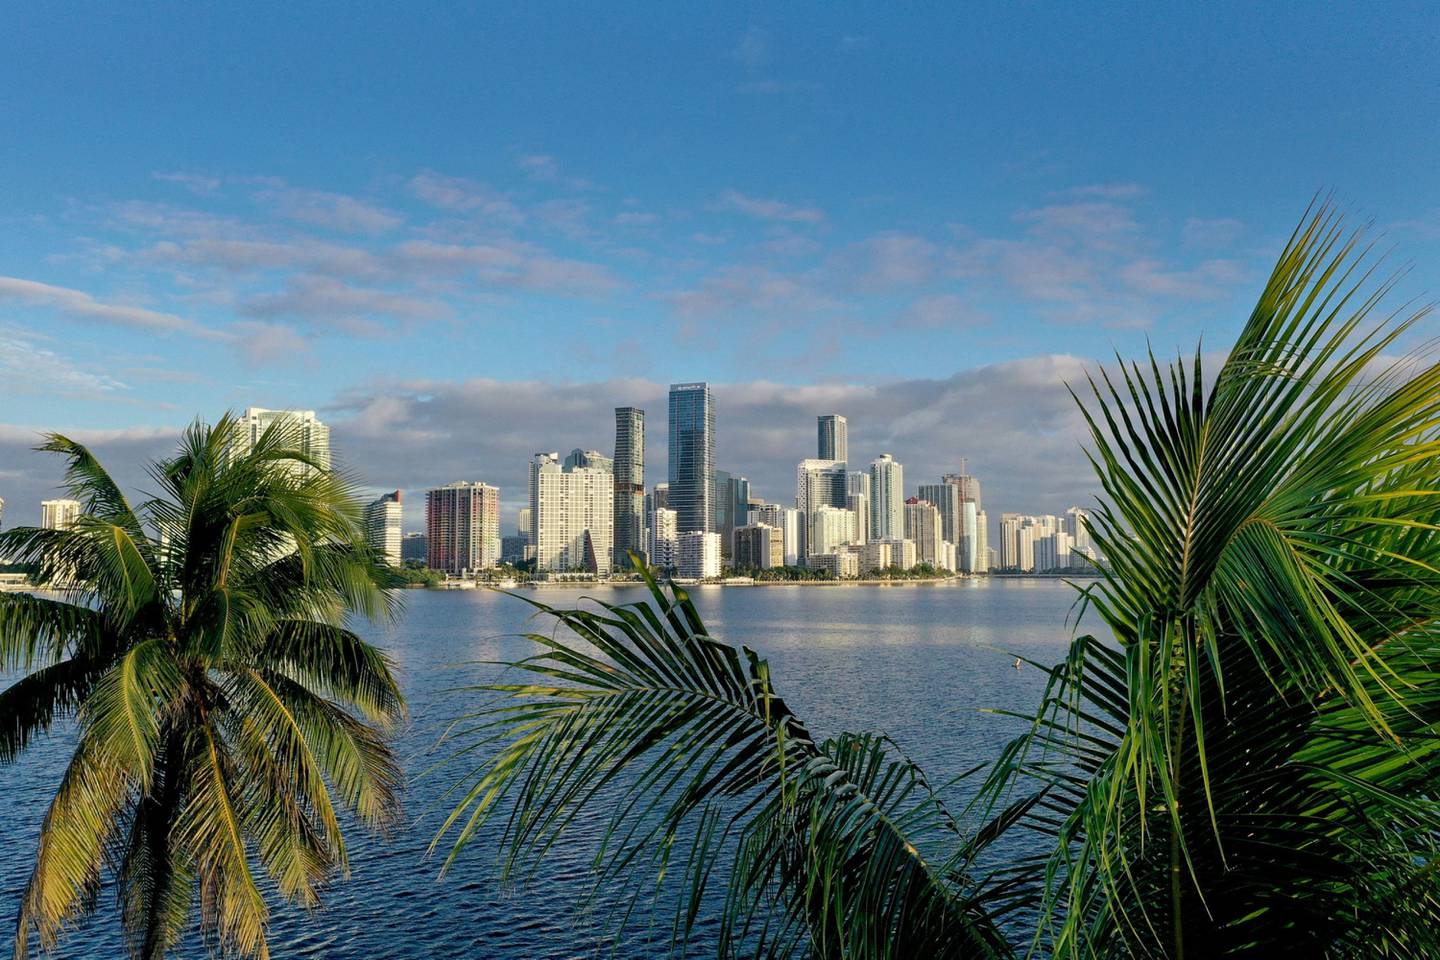 Vista aérea de palmeras enmarcando el perfil de la ciudad el 27 de octubre de 2021 en Miami, Florida. Foto: Joe Raedle/Getty Images